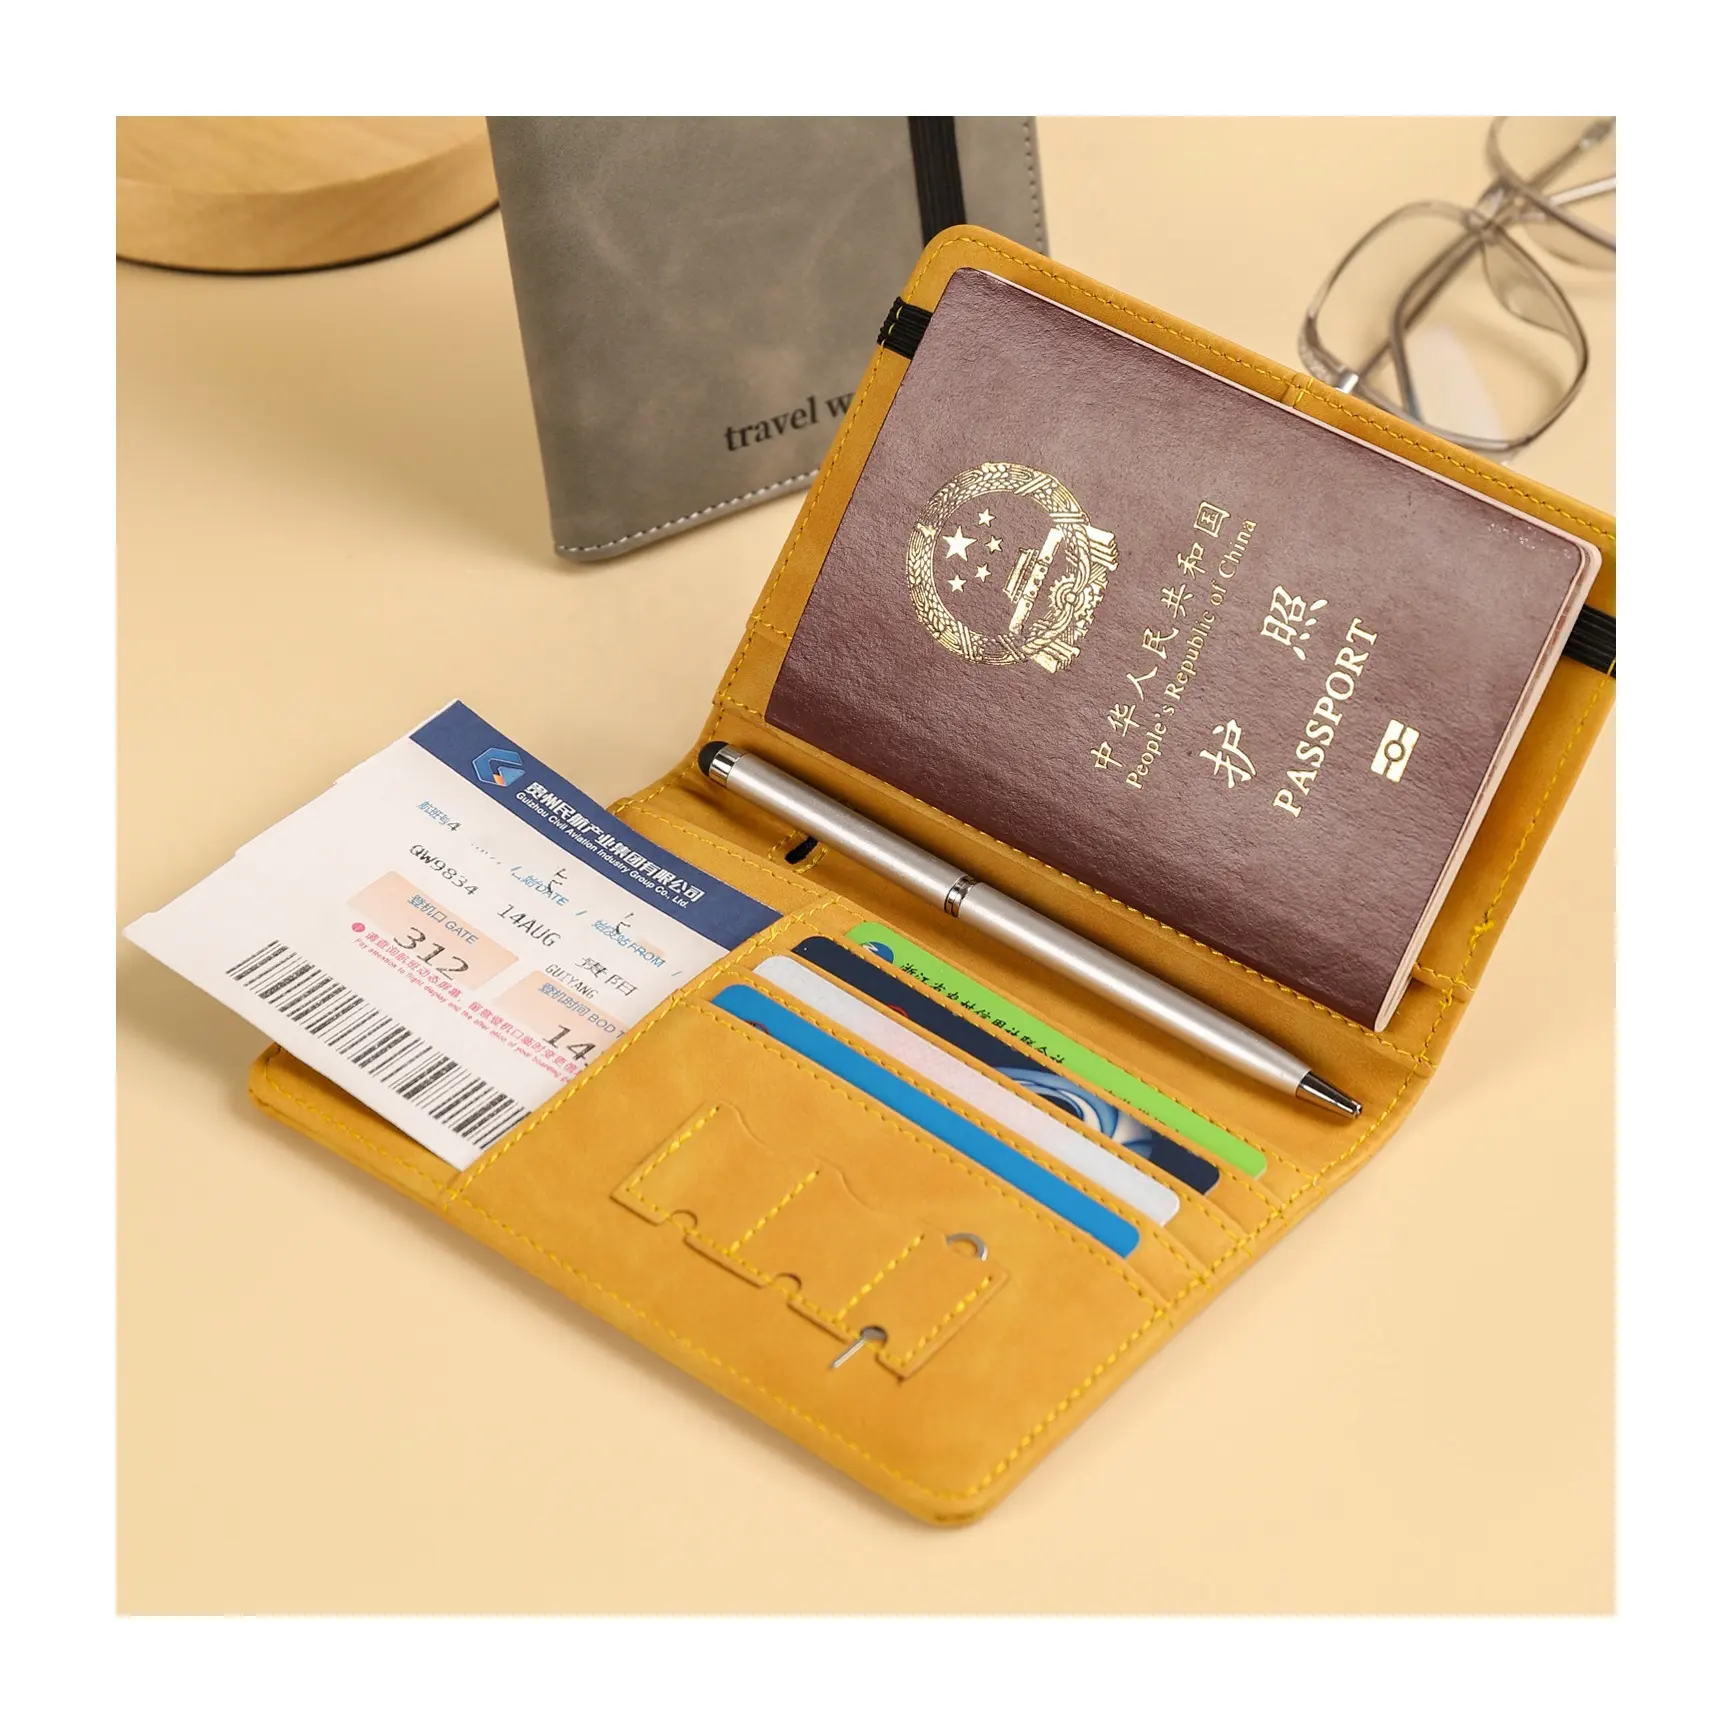 Carteira de viagem para passaporte, carteira multifuncional de alta qualidade em couro pu, herança clássica para viagens de negócios e desfrute de todas as viagens